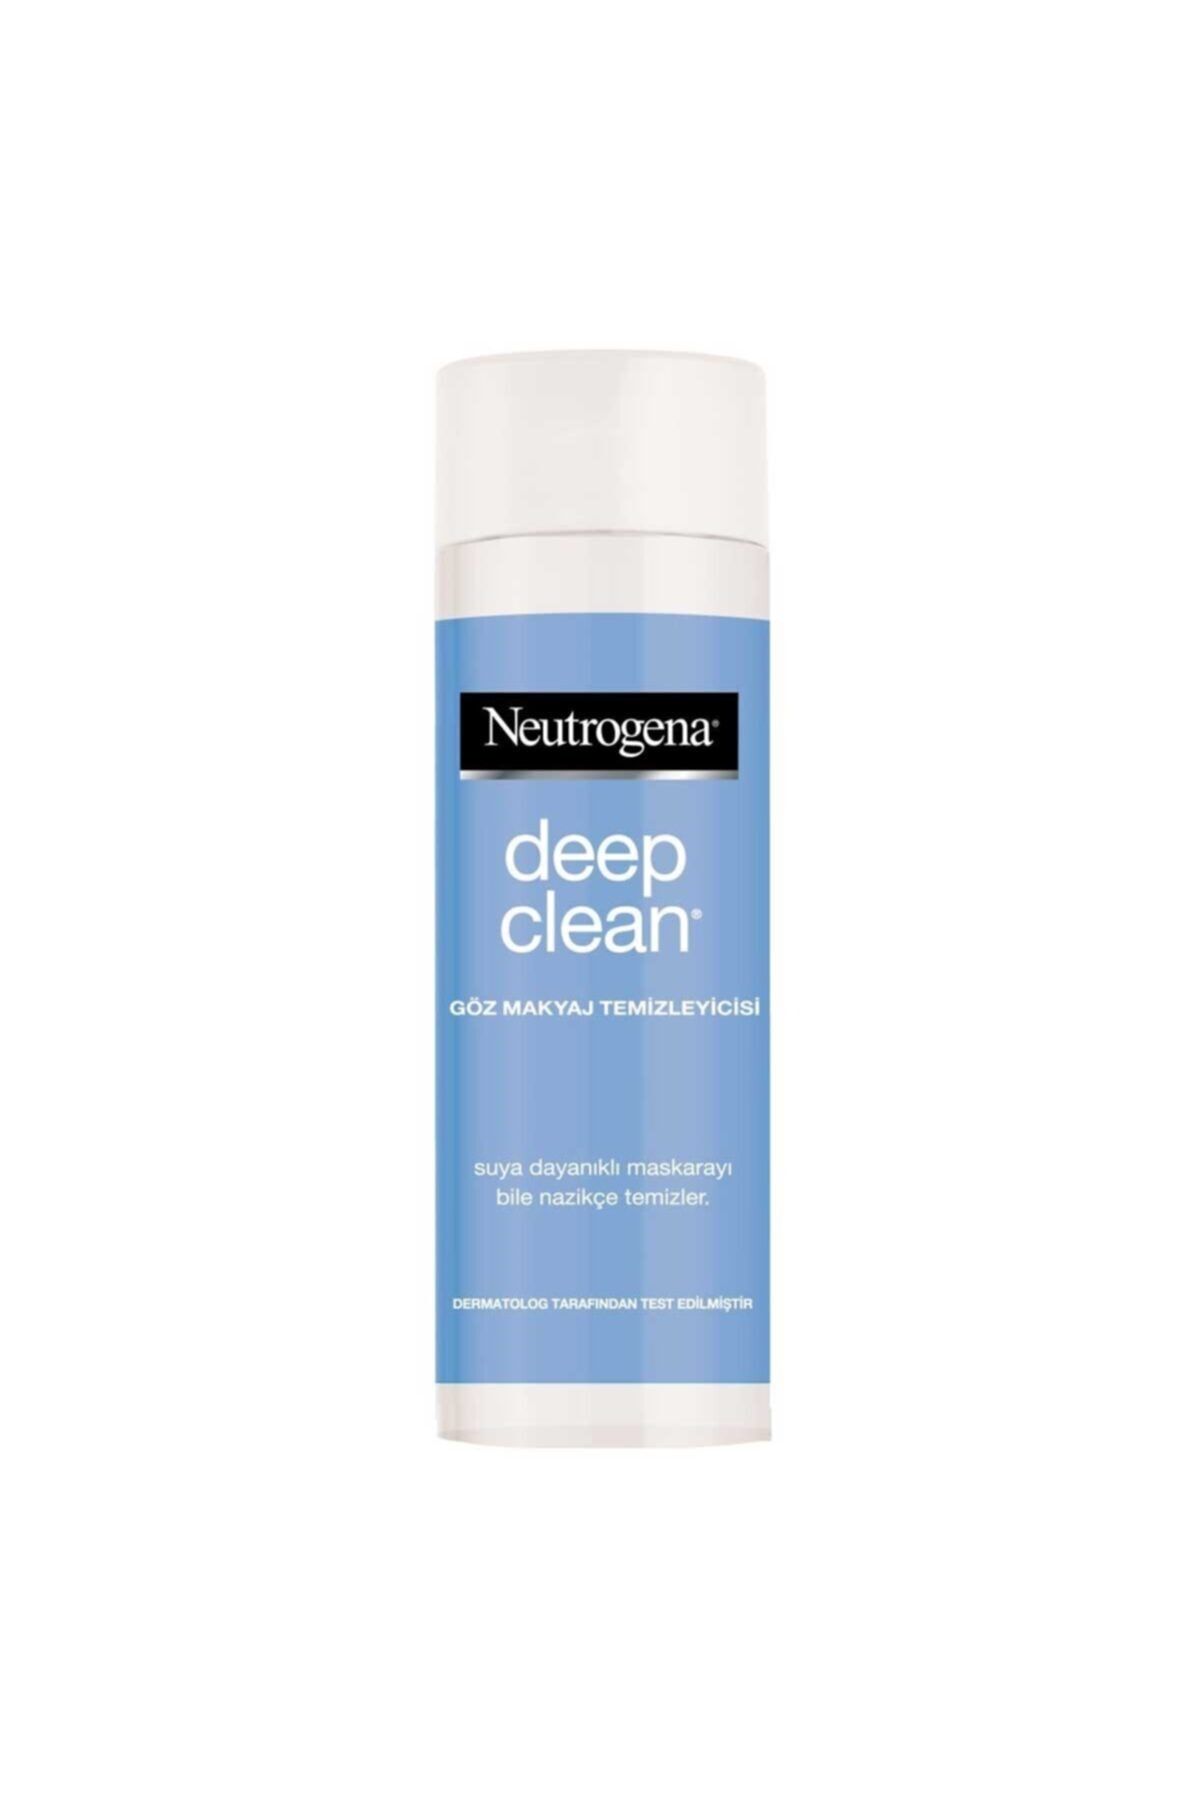 Neutrogena Deep Clean Göz Makyaj Temizleyici 125 ml